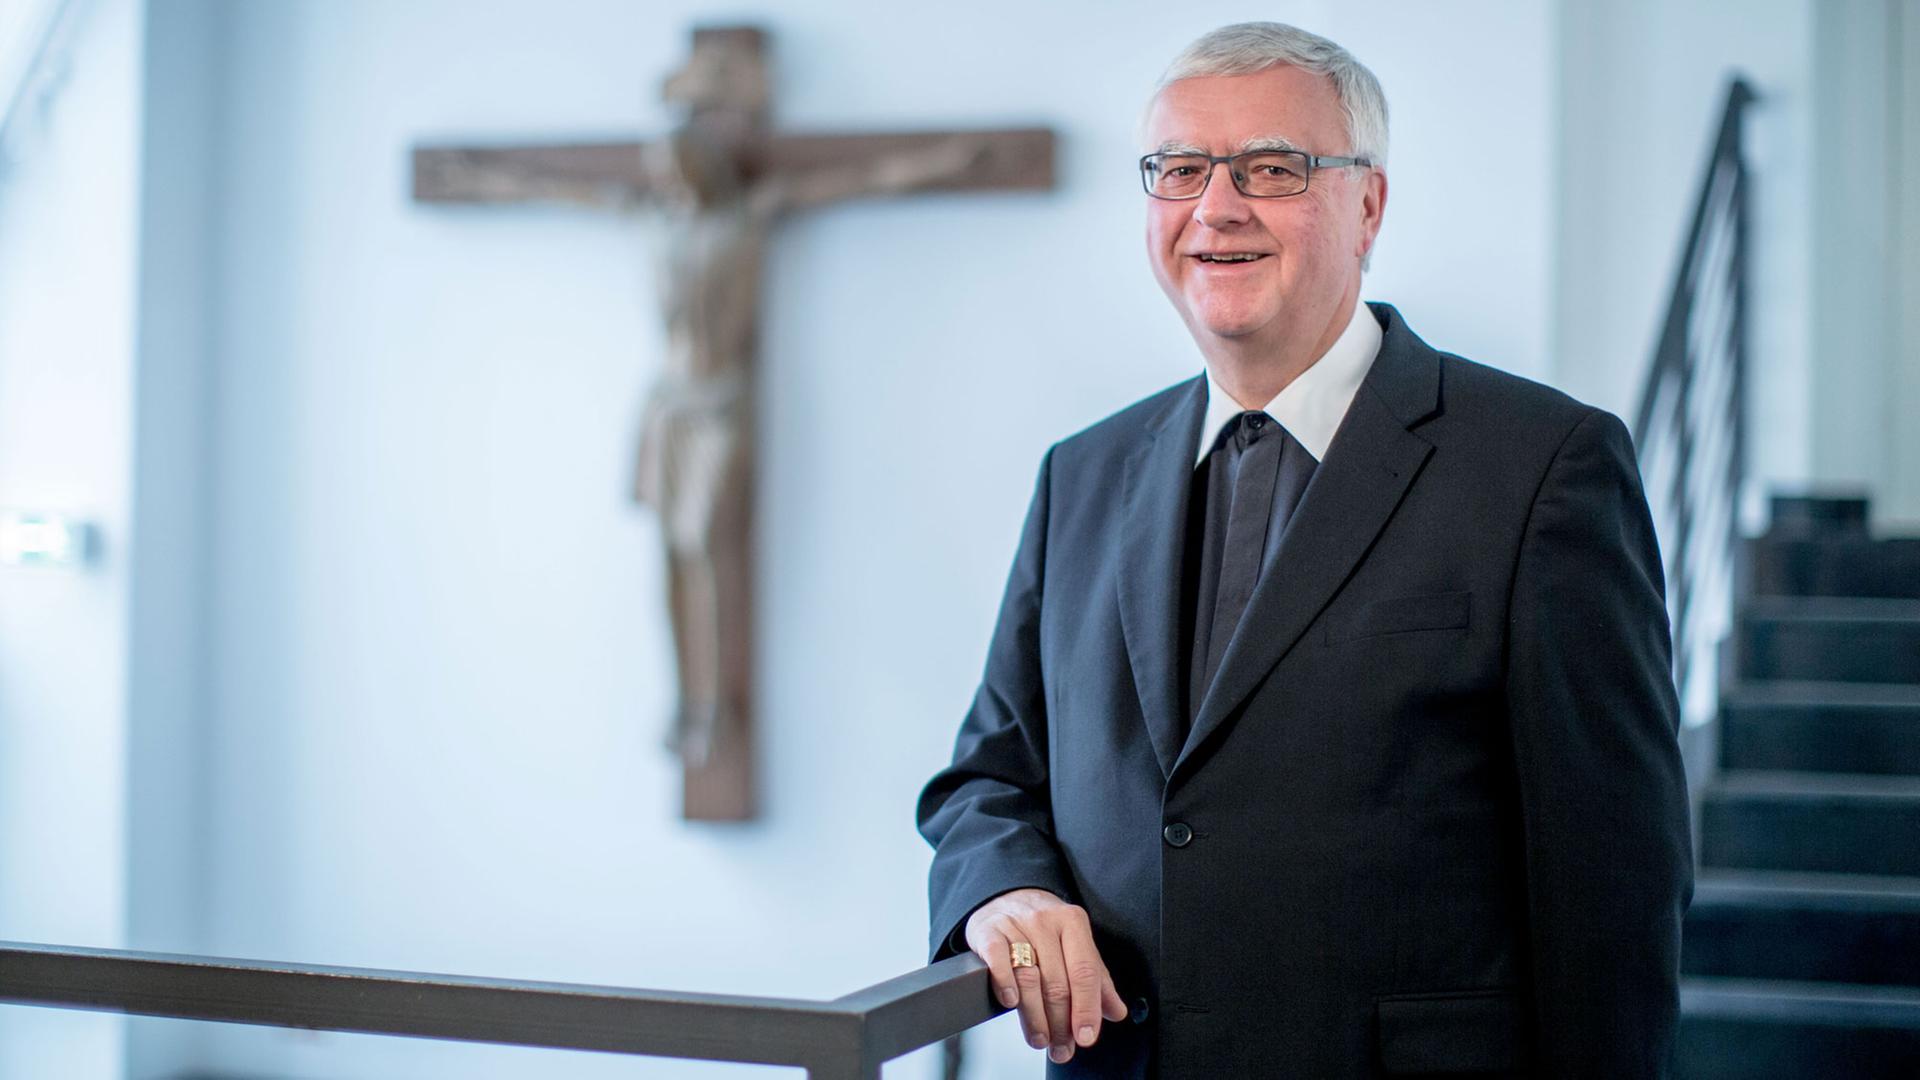 Der neu ernannte Erzbischof von Berlin, Heiner Koch, spricht am 17.09.2015 im Bischöflichen Ordinariat in Berlin.